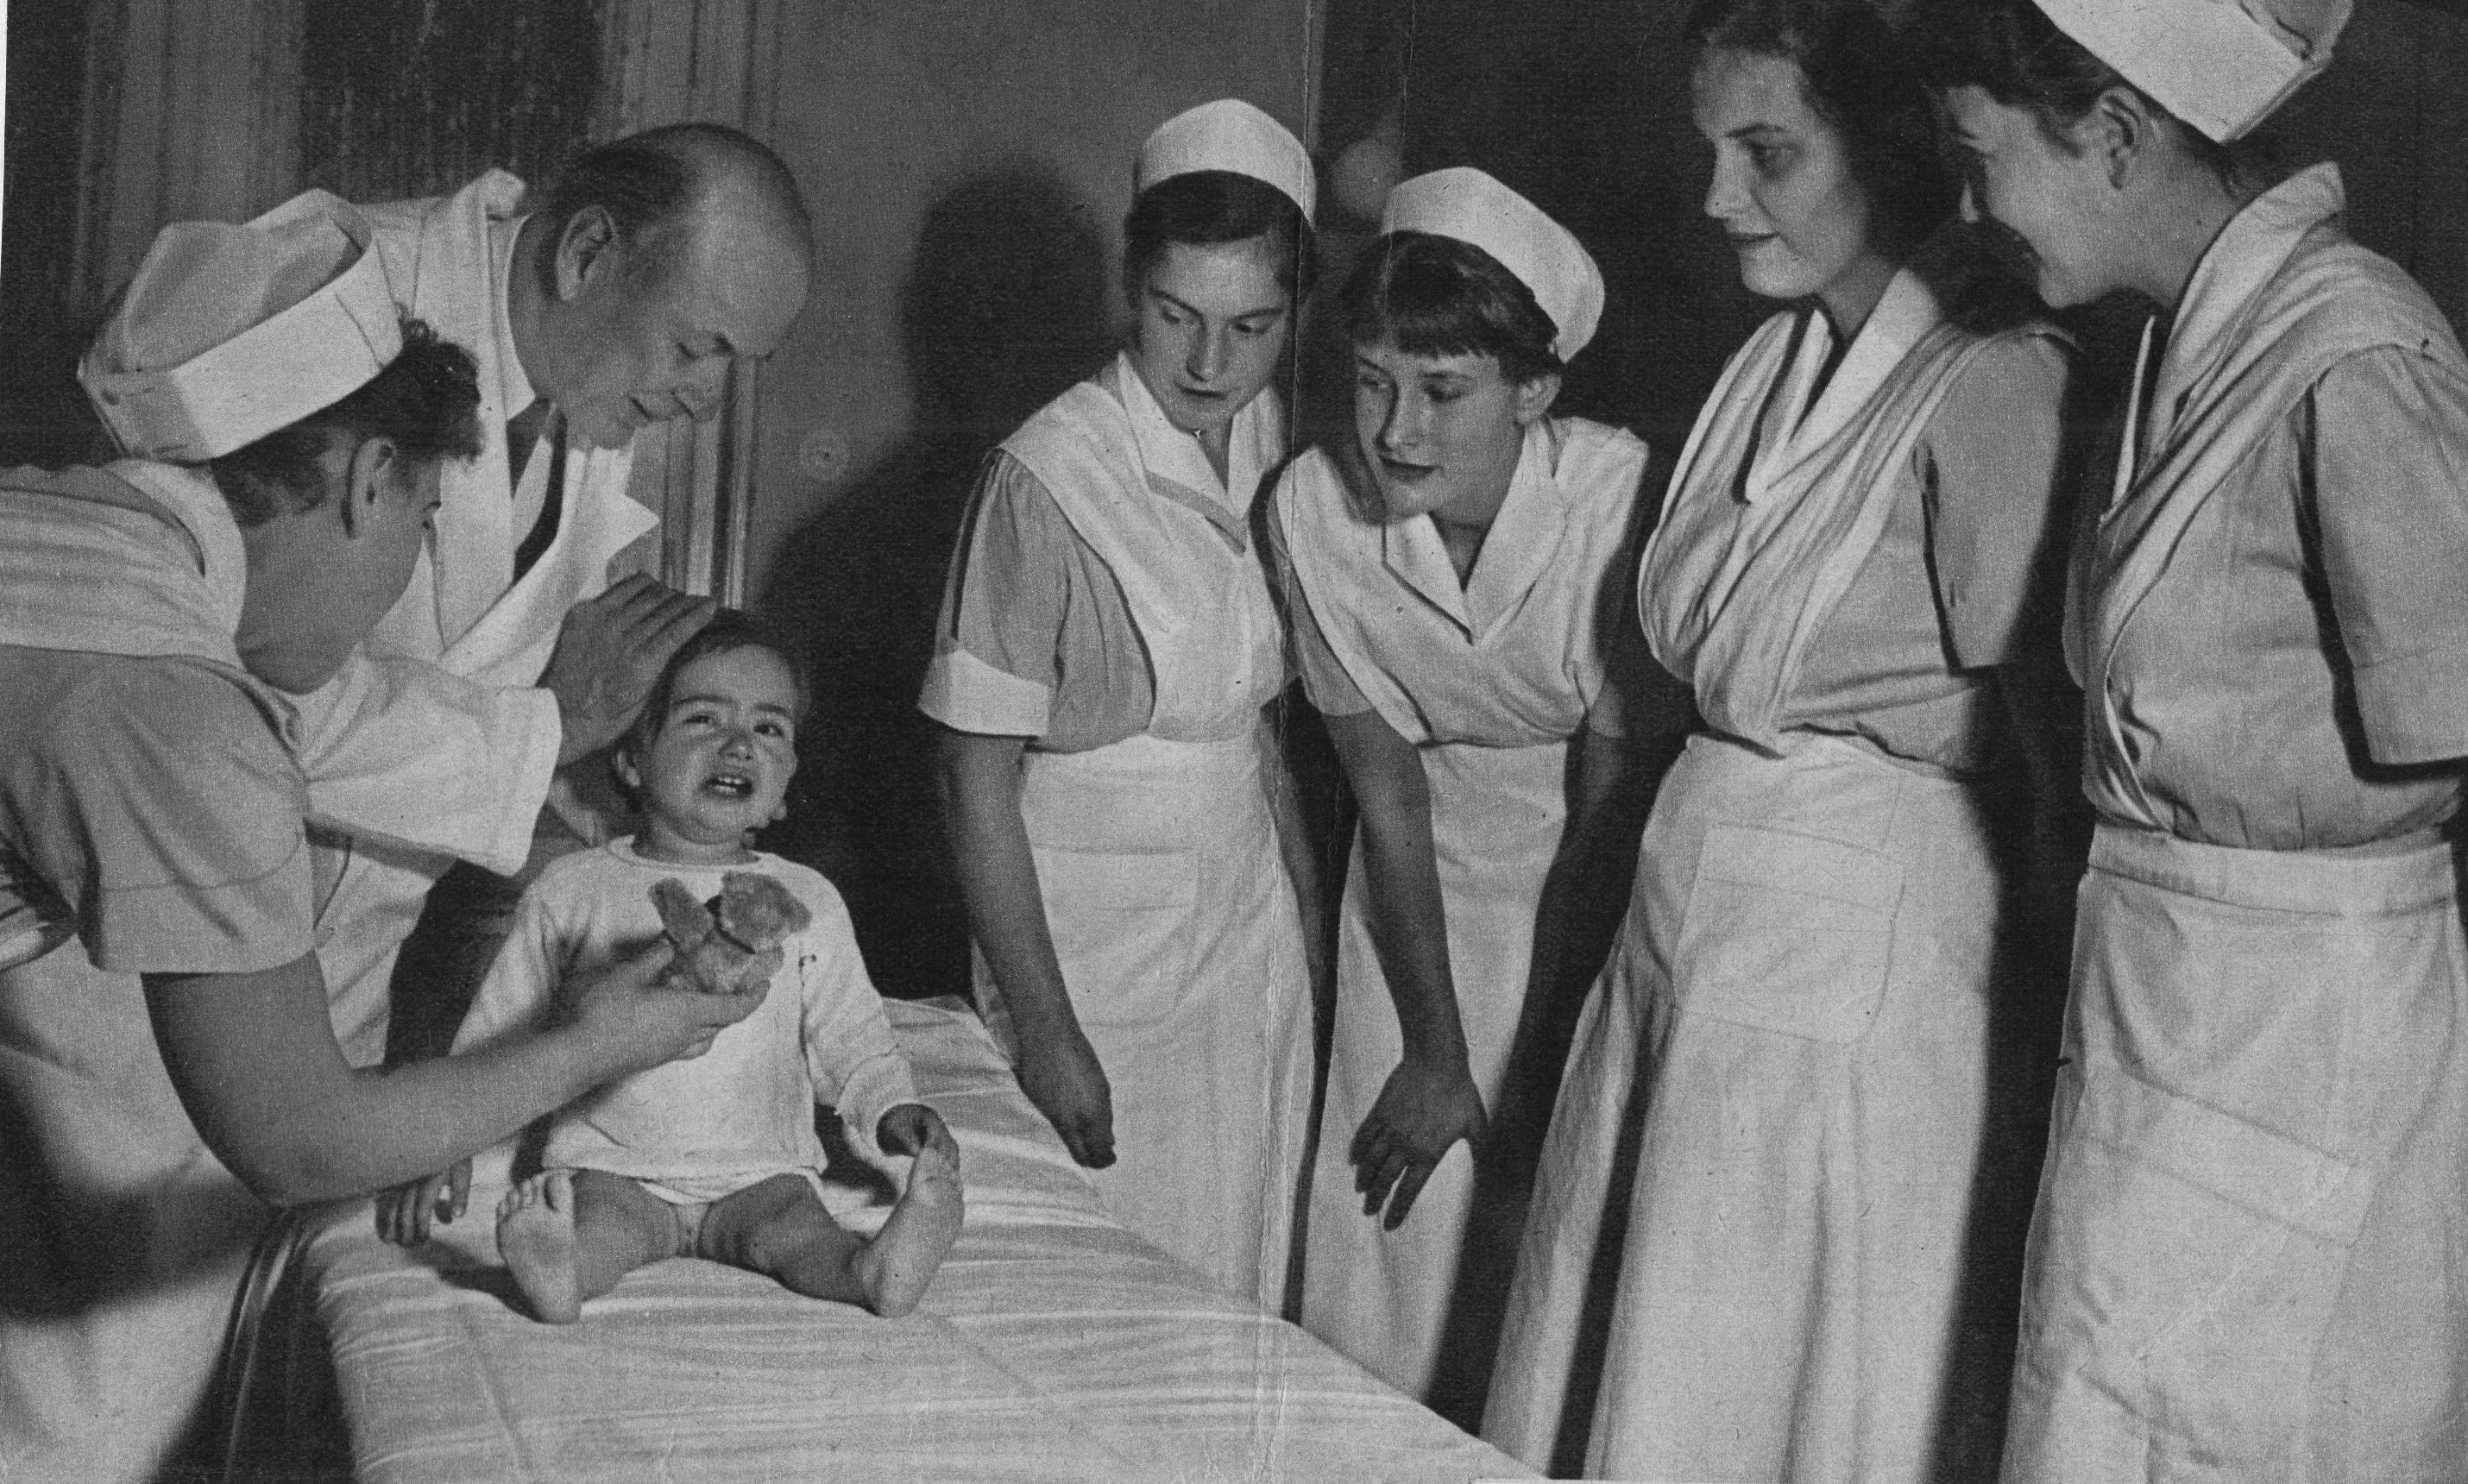 Сексуальную медсестру начали дрючать